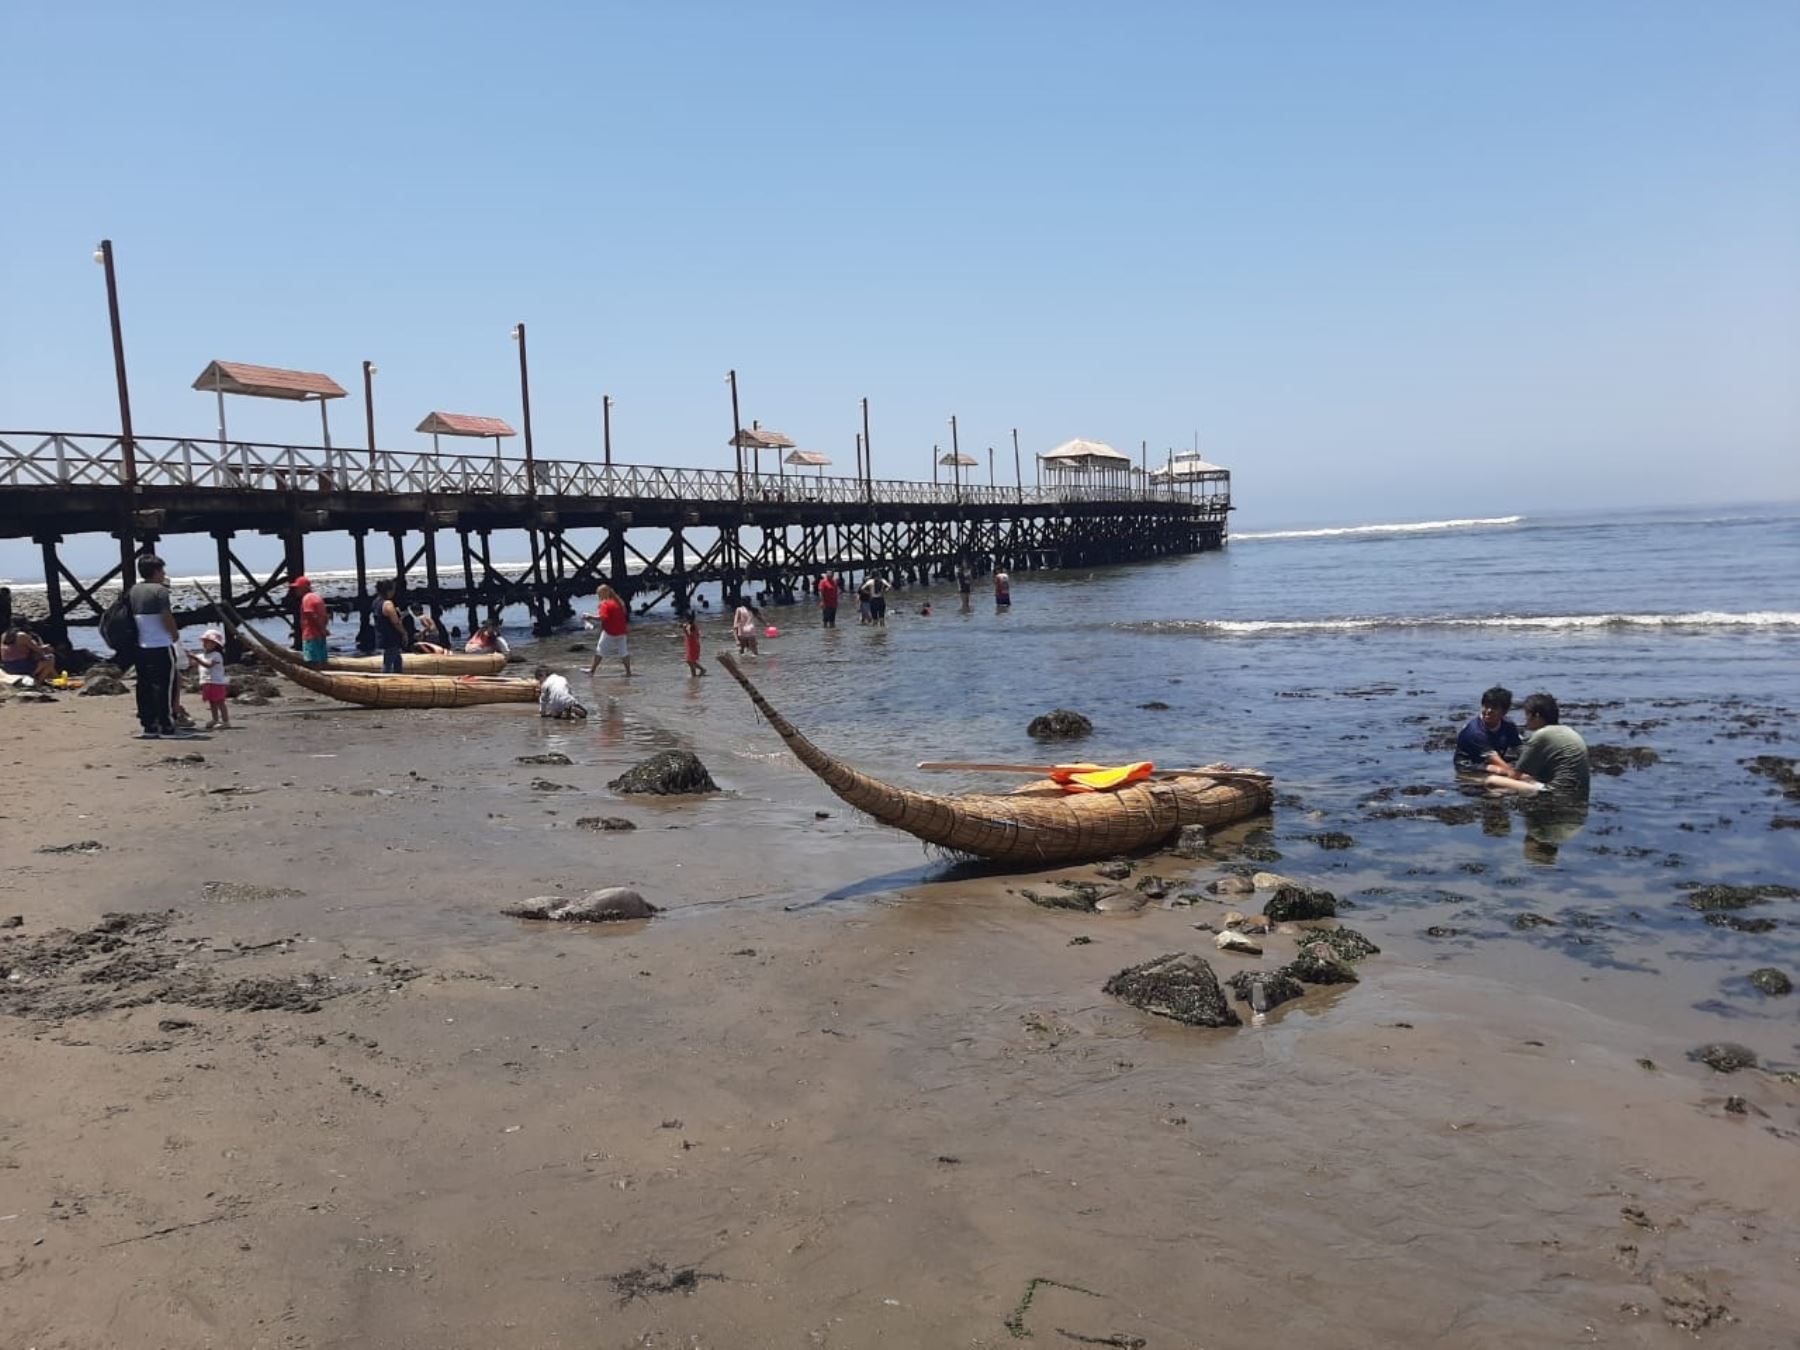 El retiro del mar de la playa de Huanchaco, ubicada en Trujillo, es un fenómeno natural que ocurre en esta época del año, afirman pescadores artesanales. Foto: Luis Puell